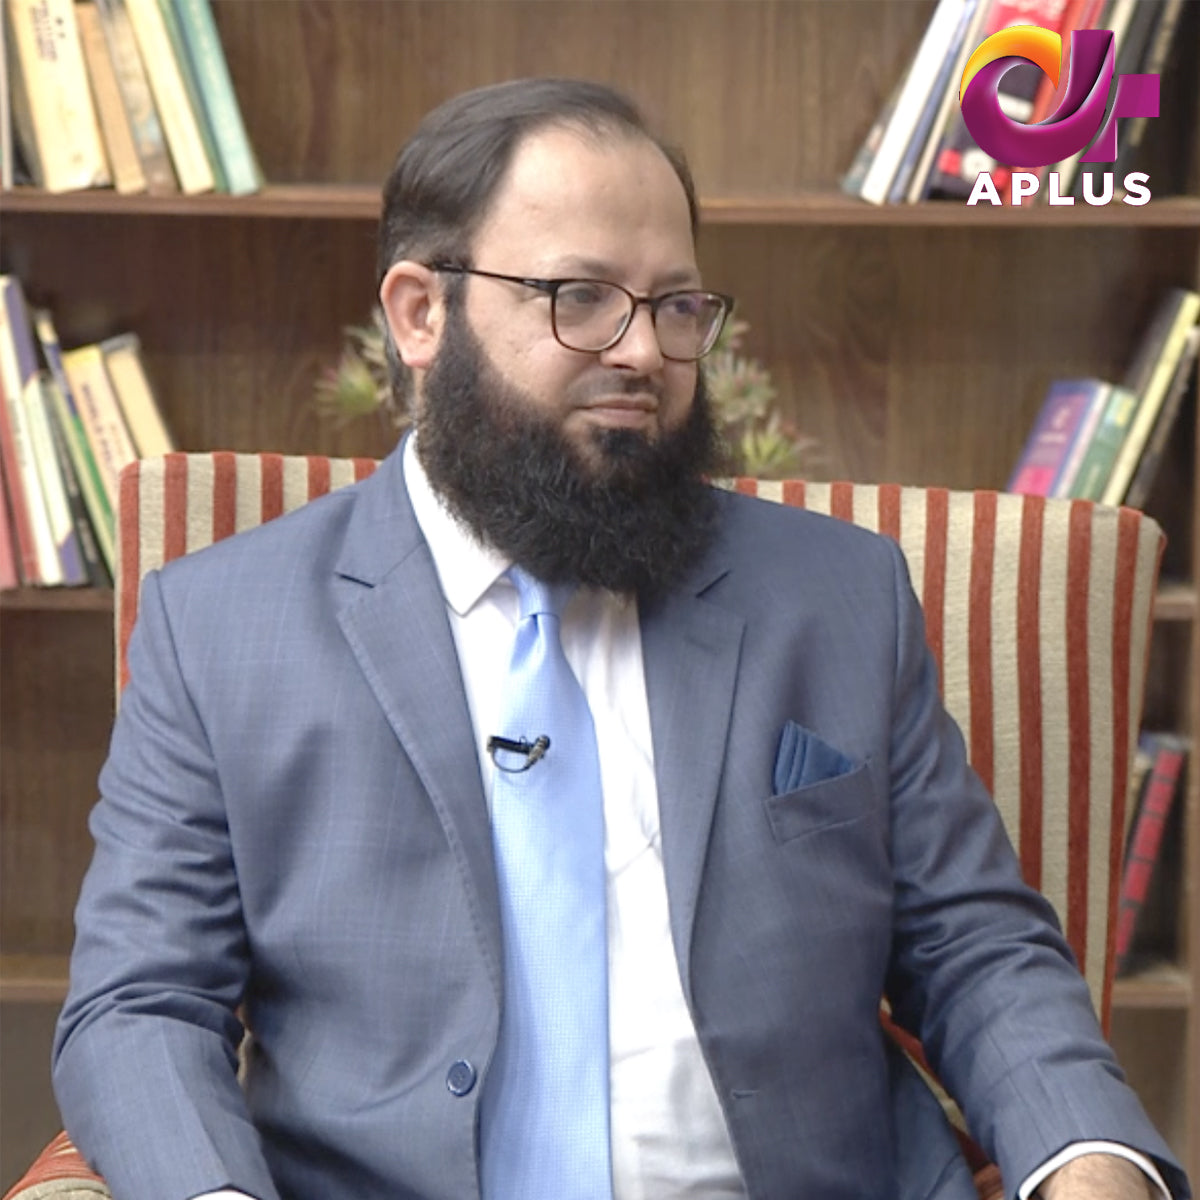  Mr.imran APLUS Interview 